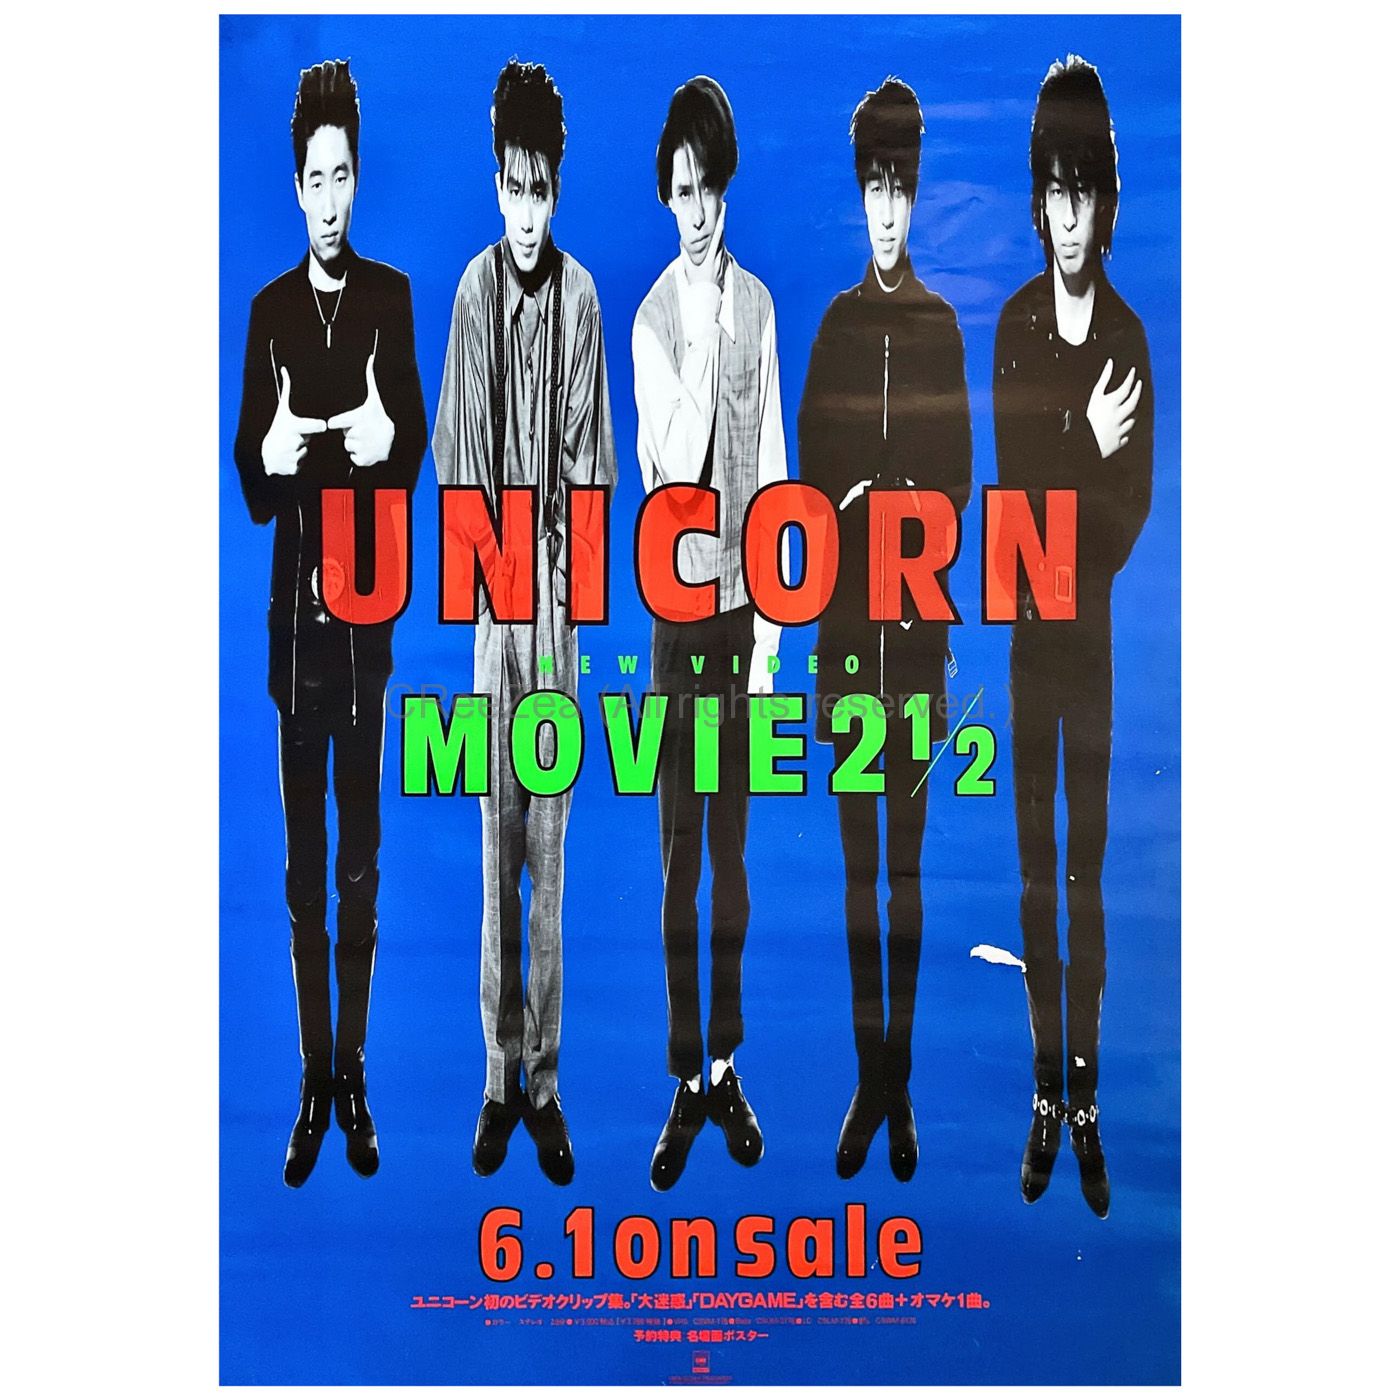 買取 ユニコーン Unicorn ポスター Movie2 1 2 1990 Pv集 アーティストショップjp